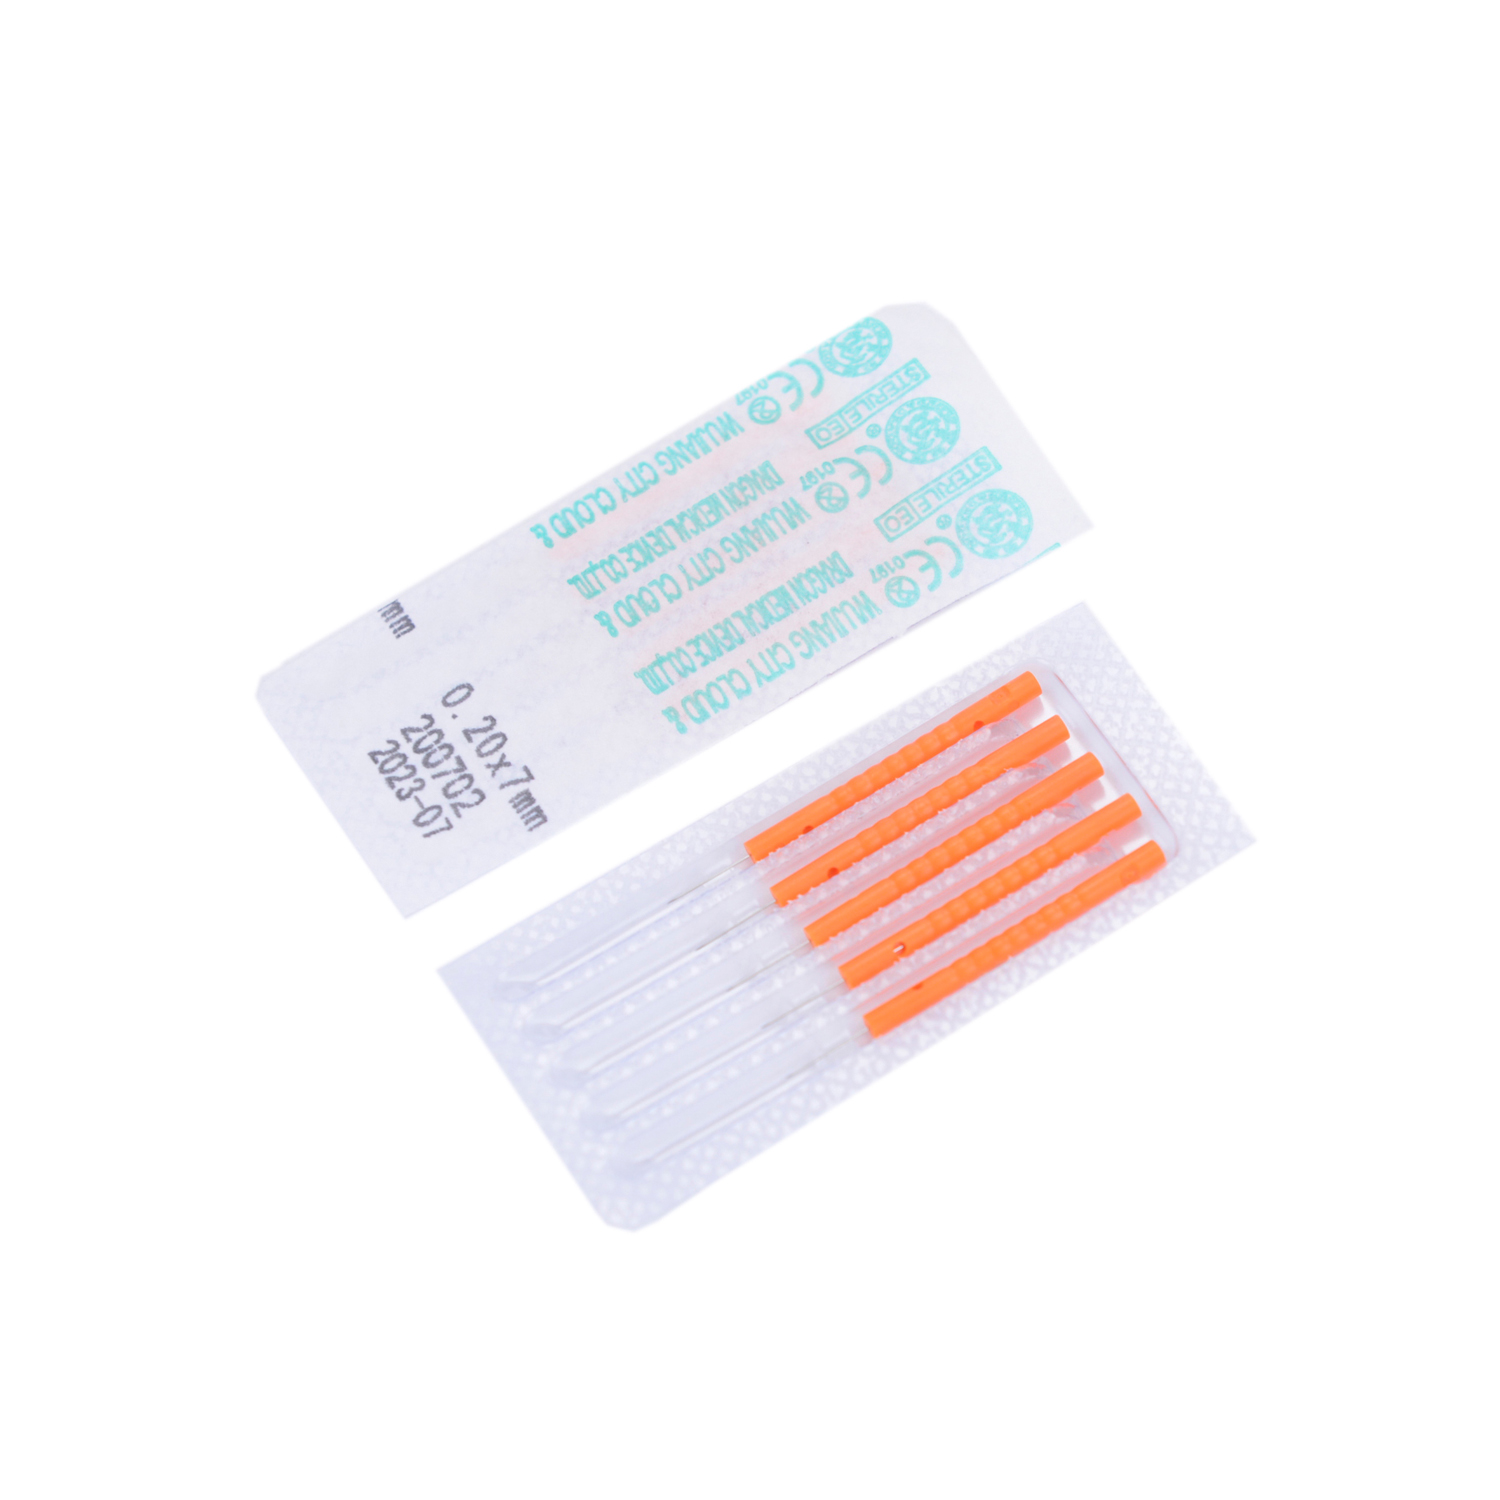 Cloud&Dragon 500 Pcs Plastic Handle Acupuncture Detox Needles (various sizes)